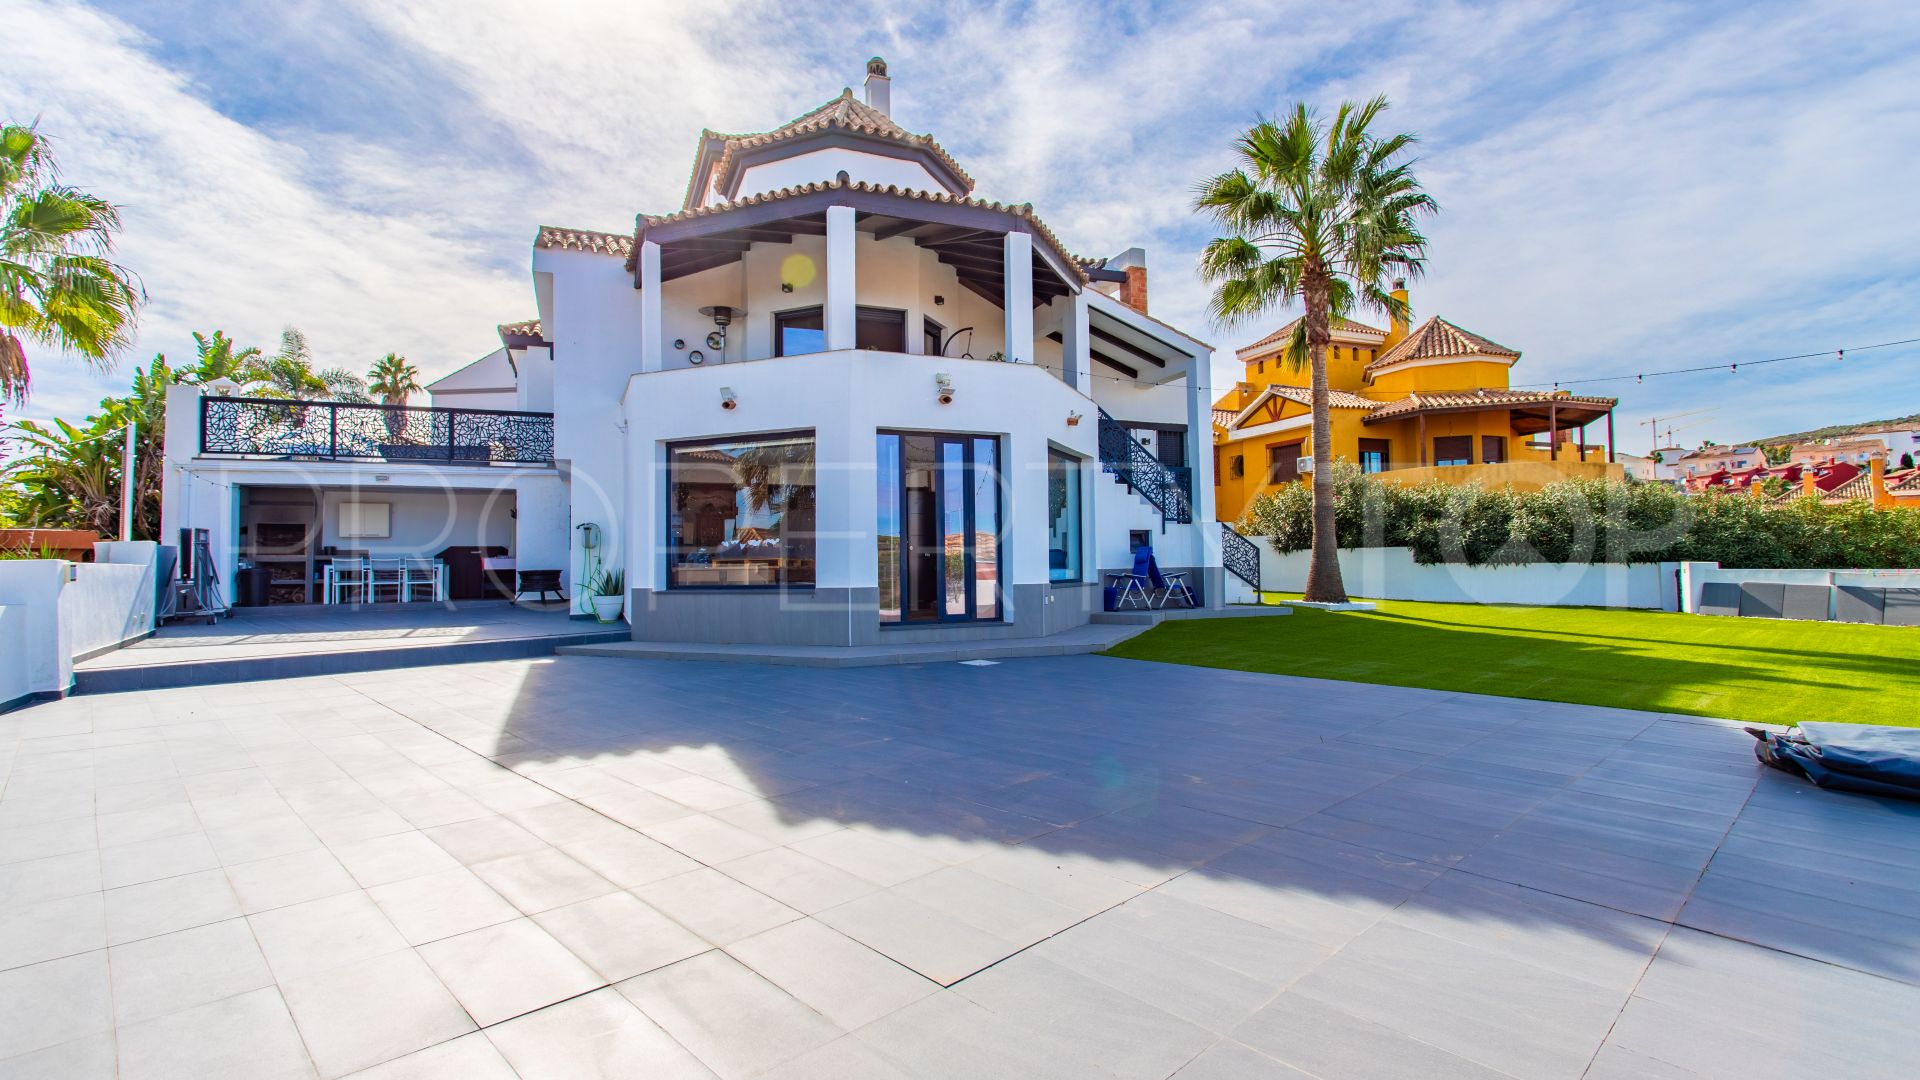 For sale Alcaidesa Costa villa with 4 bedrooms